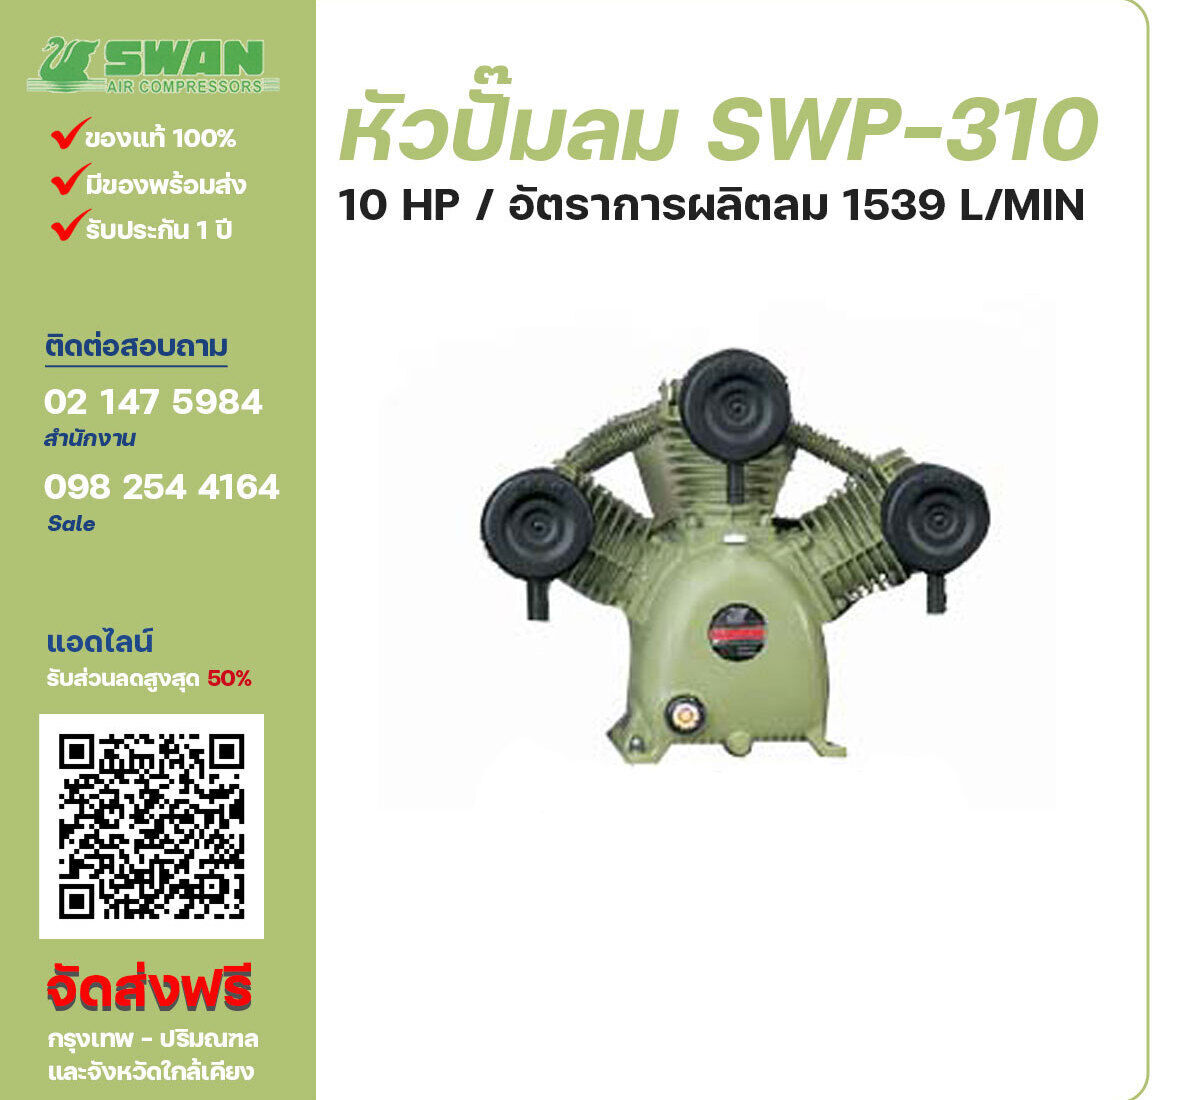 จำหน่ายหัวปั๊มลมสวอน ของแท้ 100% SWAN Bare Compressor รุ่น SVP-310 ขนาด 10 แรงม้า อัตราการผลิตลม 1,151 ลิตร / นาที รับประกัน 3 เดือน ตามเงื่อนไขของบริษัทฯ จัดส่งฟรี กรุงเทพ-ปริมณฑล